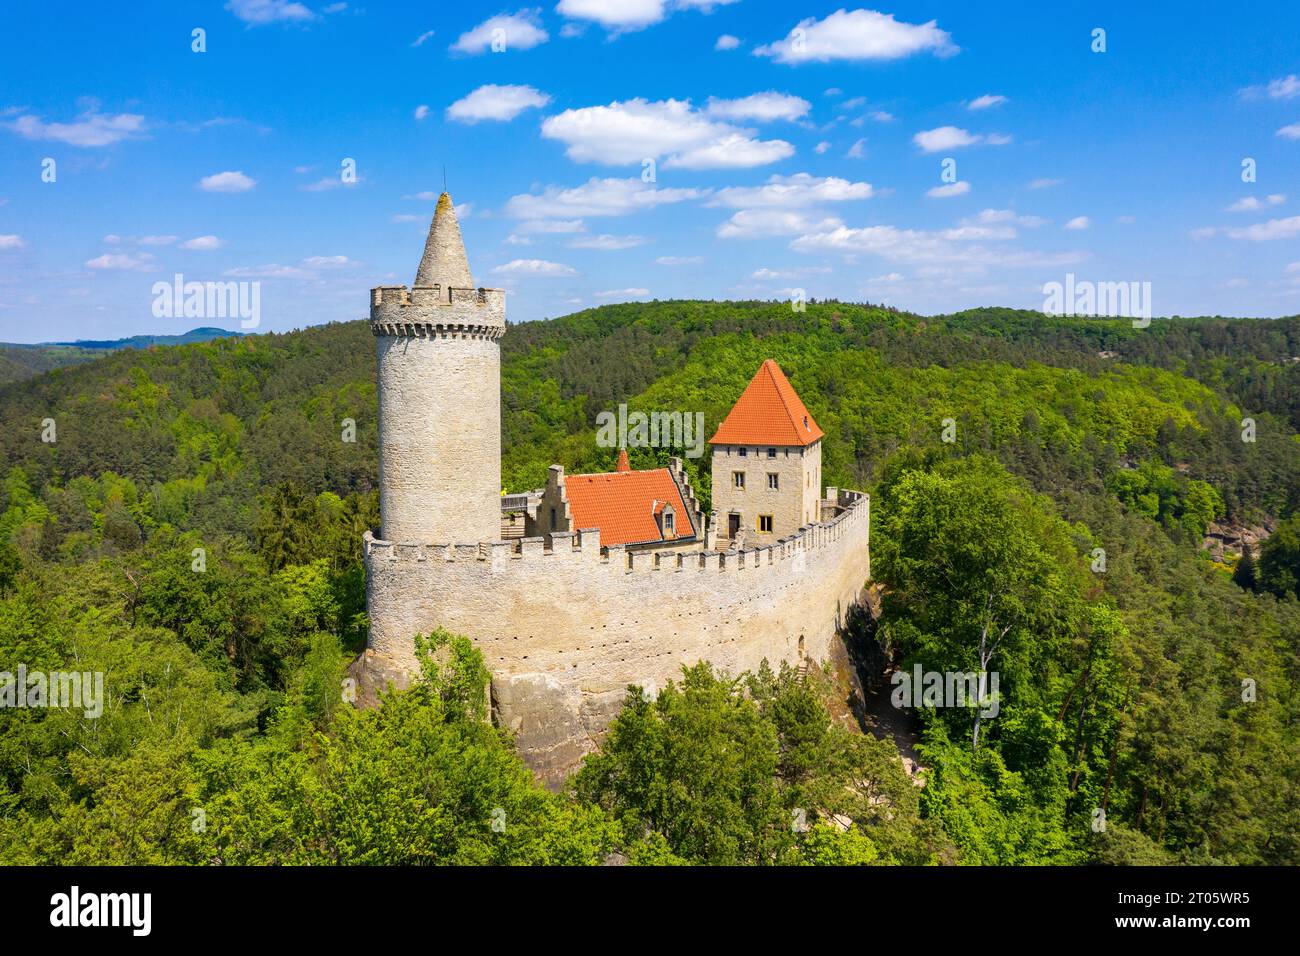 Veduta aerea del castello medievale di Kokorin vicino a Praga in Czechia. Europa centrale. Castello gotico medievale Kokorin, Kokorinsko paesaggio protetto zona i Foto Stock